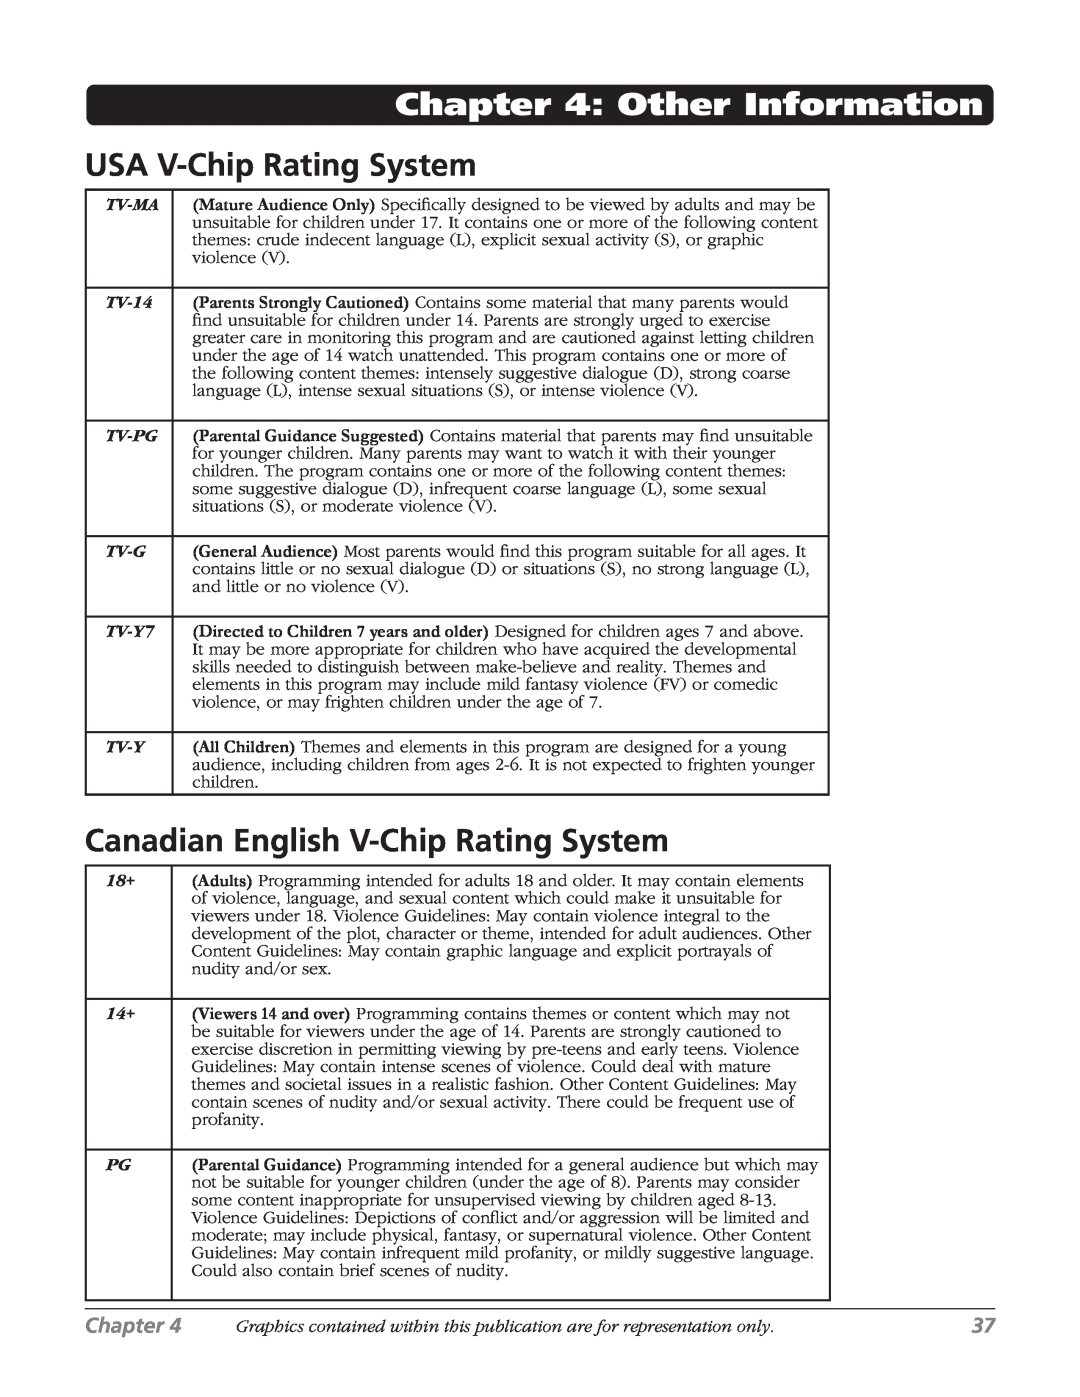 RCA 32v434t, 32V524T manual Other Information, USA V-Chip Rating System, Canadian English V-Chip Rating System, Chapter 